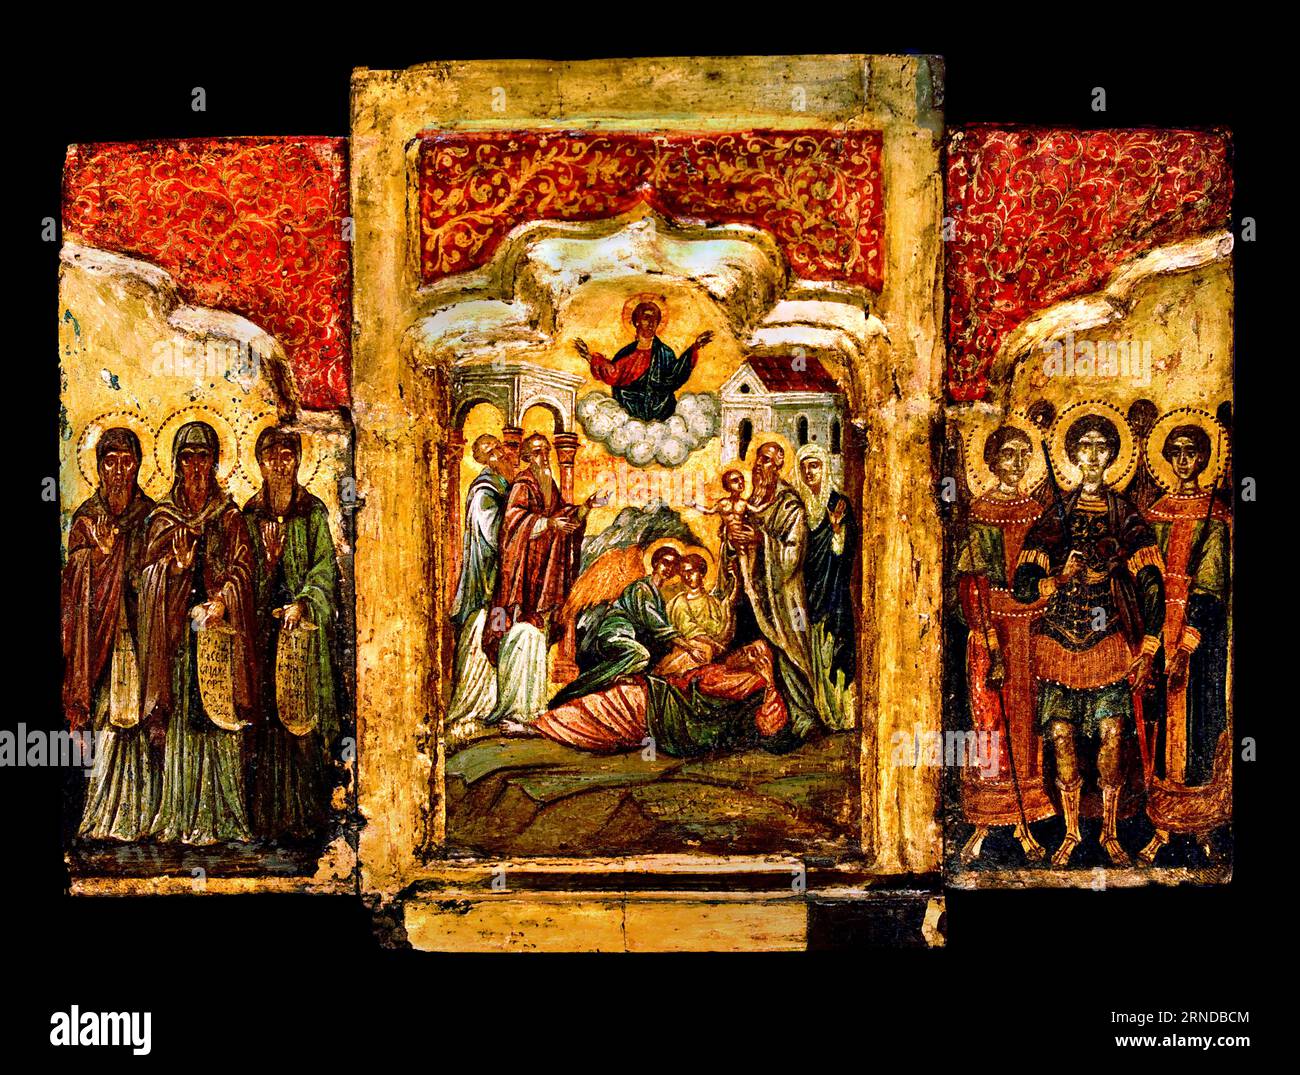 Triptychon, der Traum von Zacharias, heiliger und Darstellung des Donar. Griechisches Museum Athen Orthodoxe Byzantinische Kirche Griechenland Stockfoto